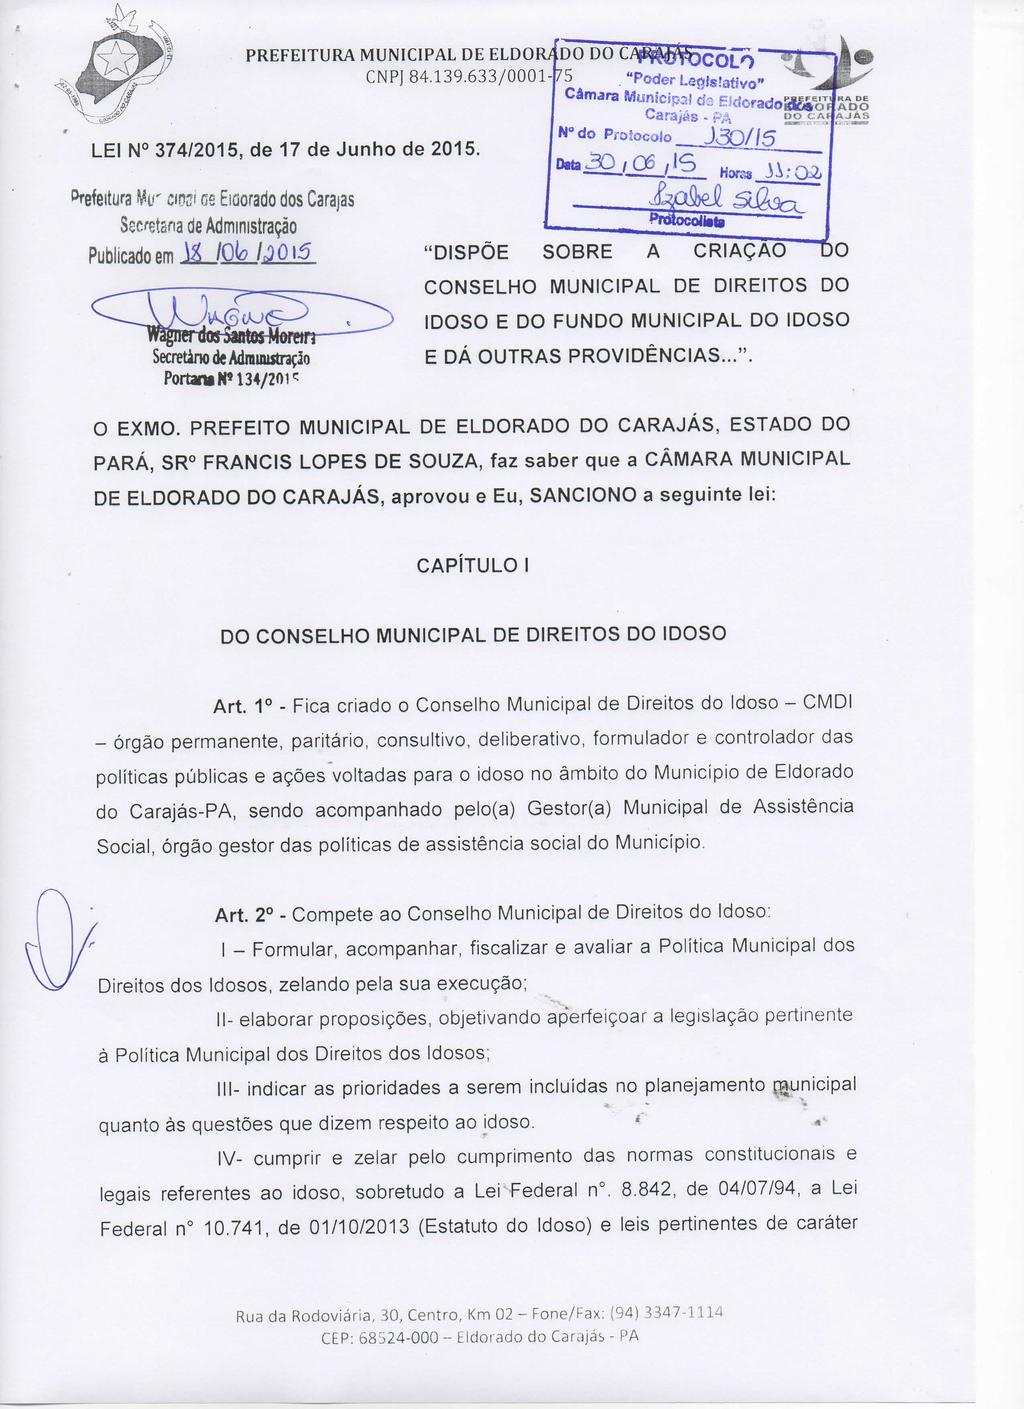 PREFEITURA MUNICIPAL DE ELDORO DO DO CNPJ 84.139.633/0001 75 LEI N 374/2015, de 17 de Junho de 2015. ^^"P^^^^ç^ 5?